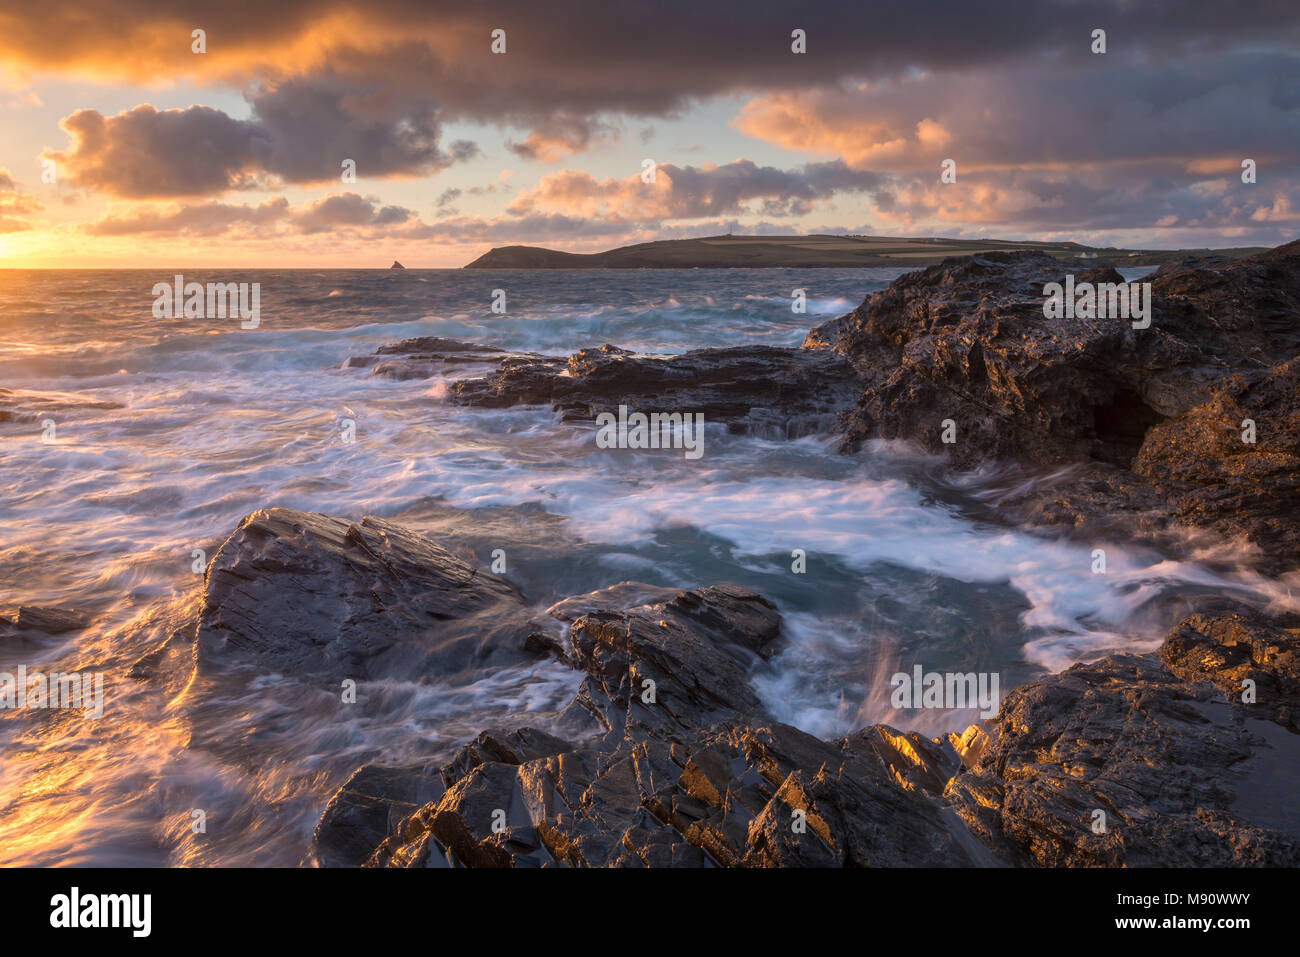 Las olas chocan contra las costas rocosas de Constantino, mirando hacia la bahía Trevose Head, Cornwall. Verano (julio de 2017). Foto de stock